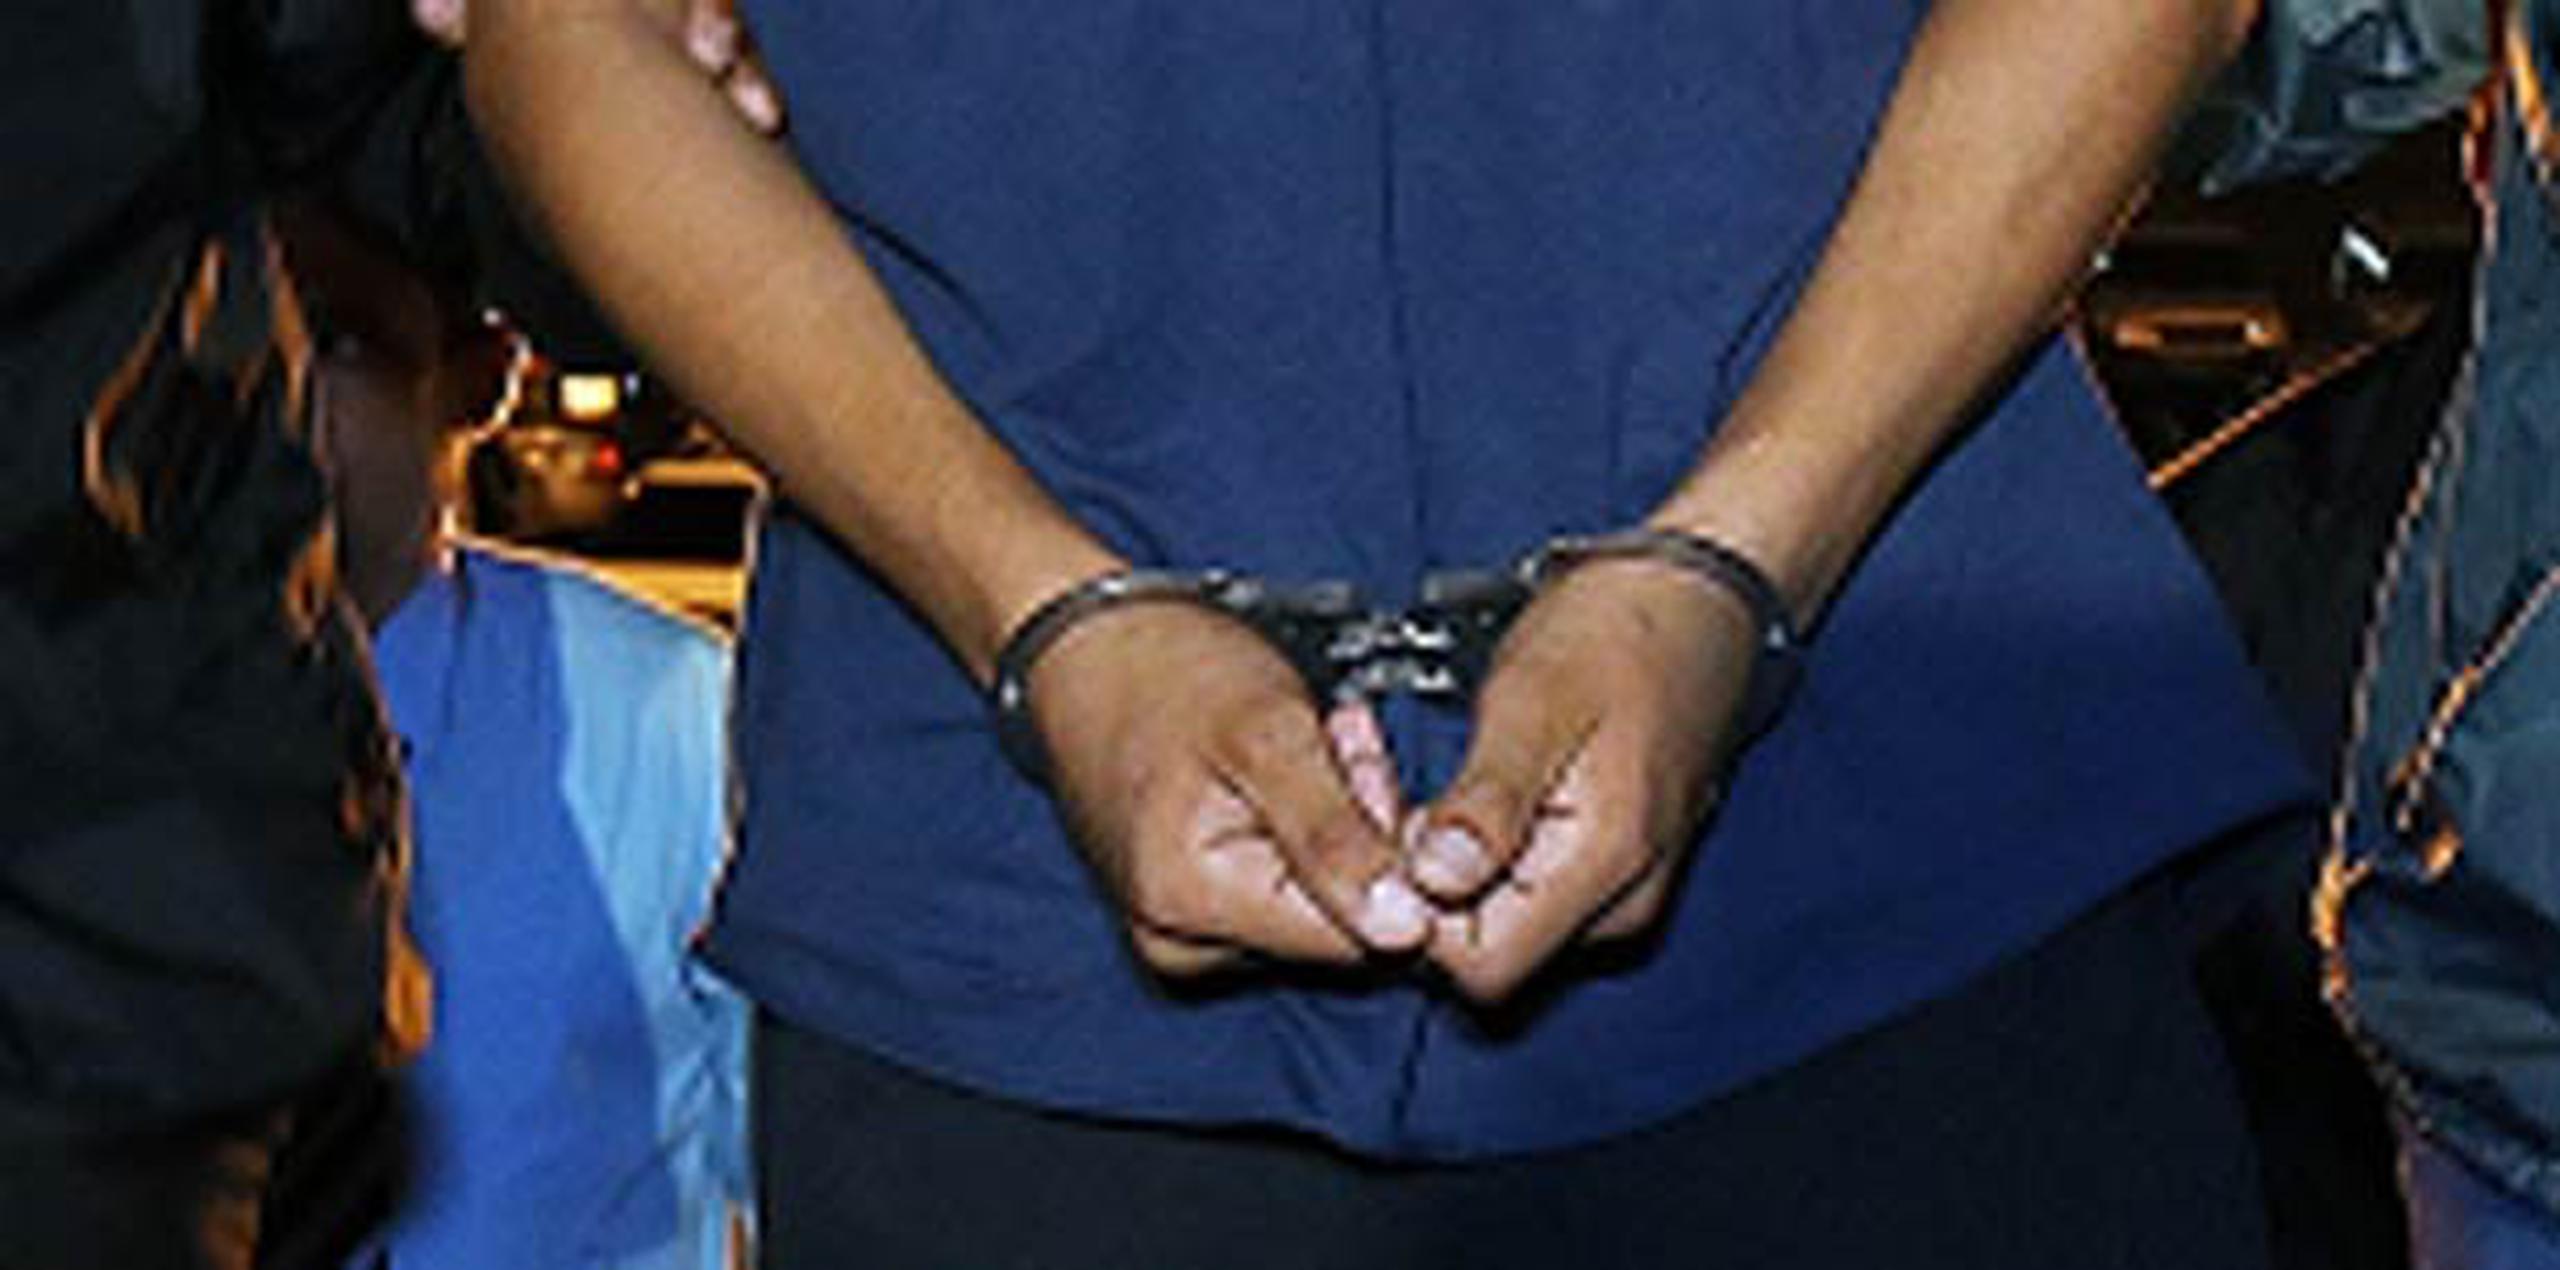 El hombre fue arrestado por personal de la División de Arrestos Especiales y Allanamientos en Arecibo. (Archivo)